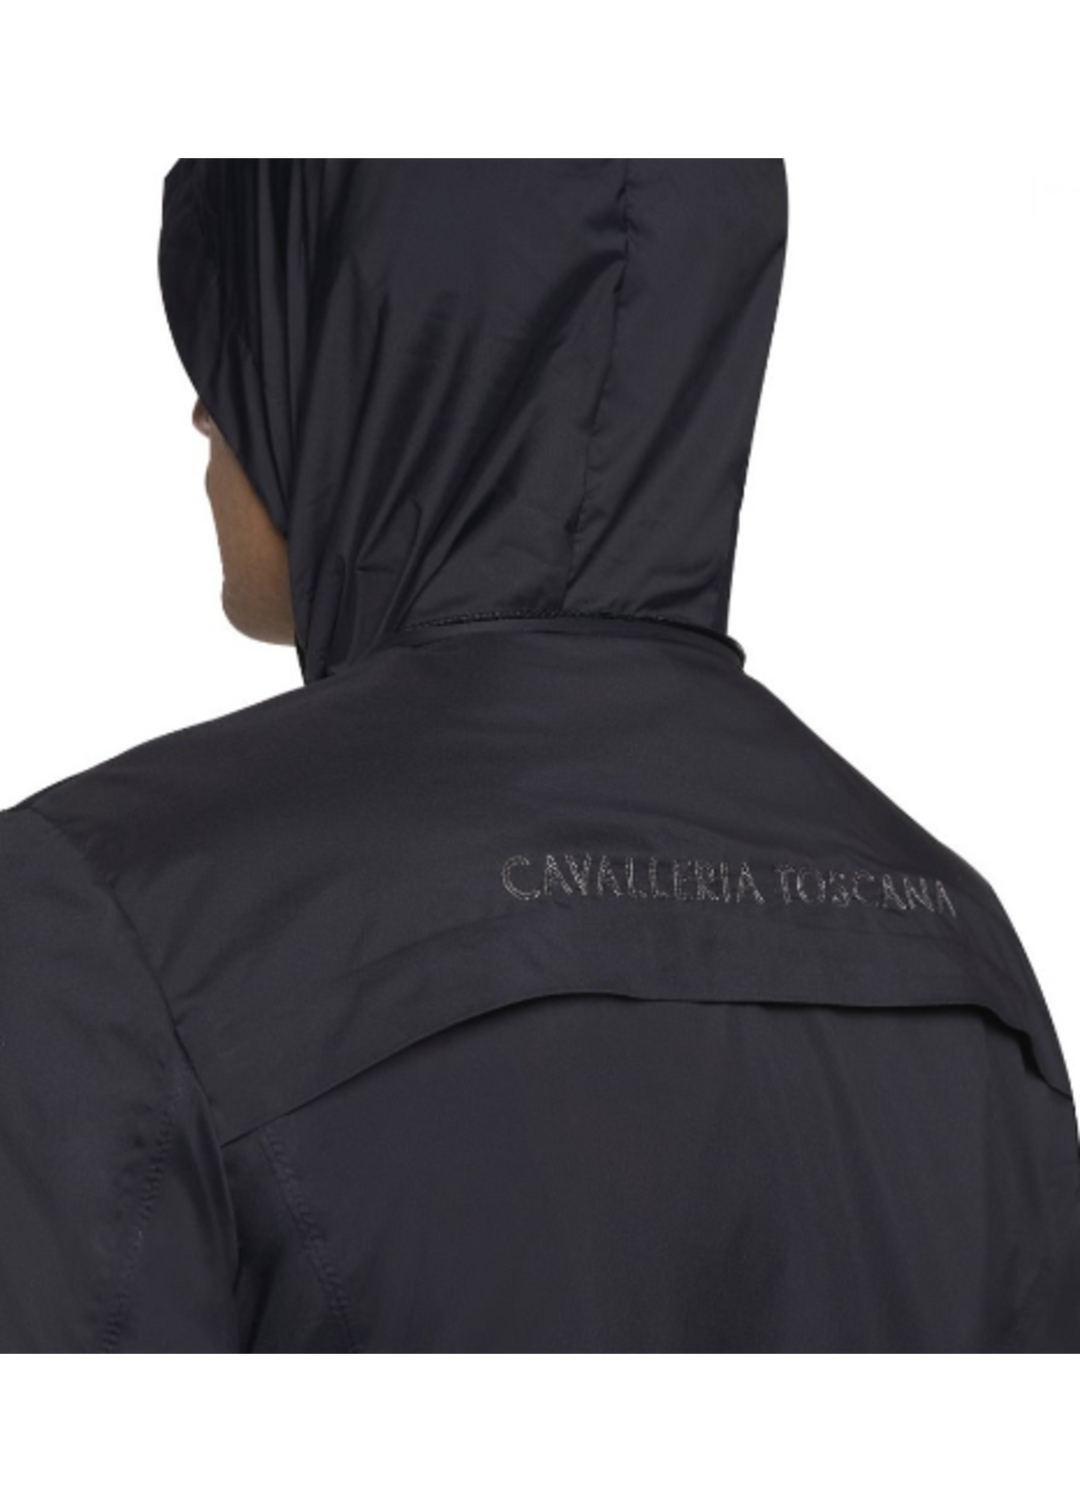 Cavalleria Toscana Men’s Waterproof Zip Jacket w/ Stow Away Hood - New!